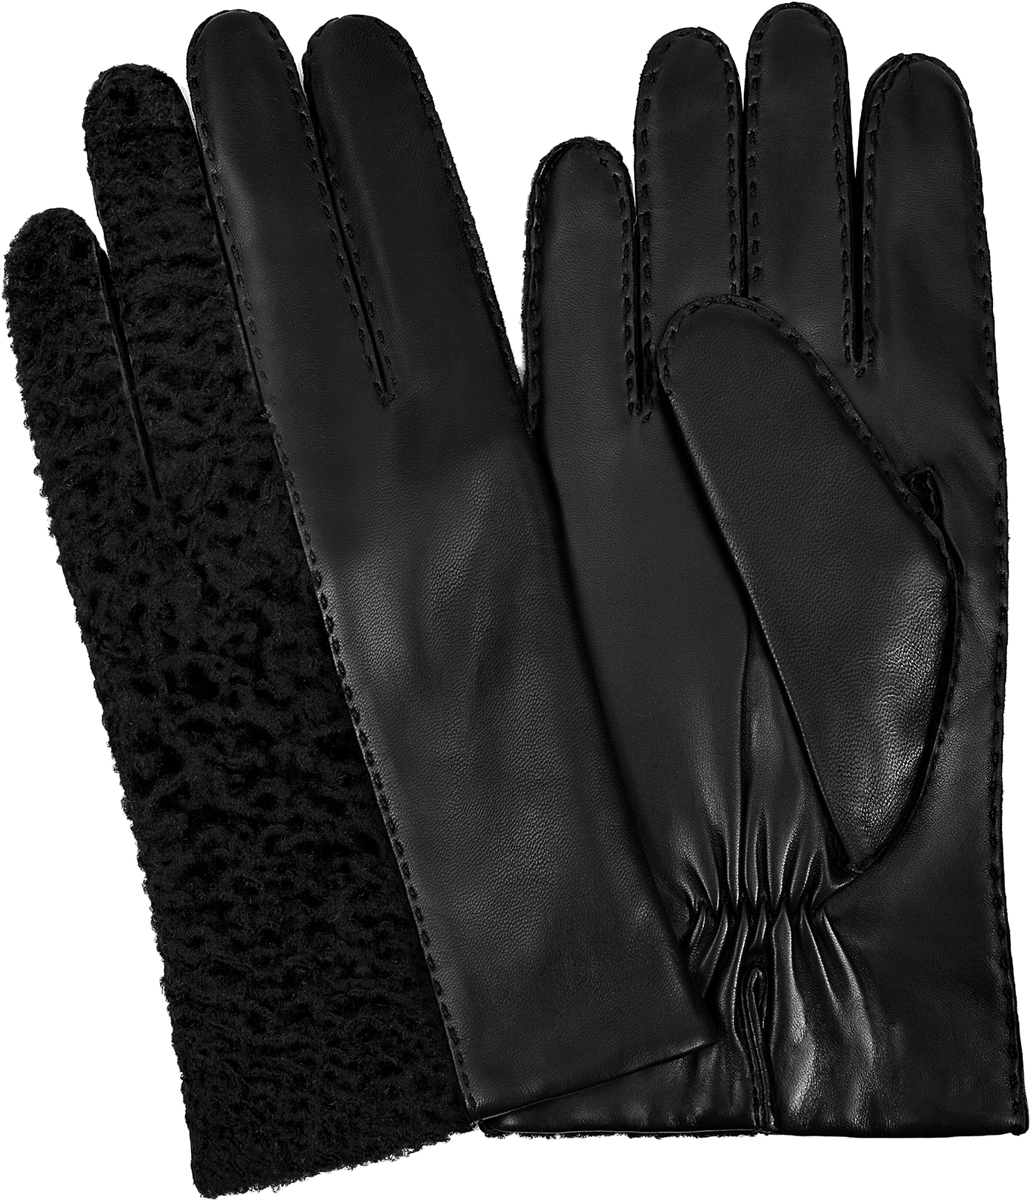 Перчатки мужские Michel Katana, цвет: черный. K100-CURLON/BL. Размер 8